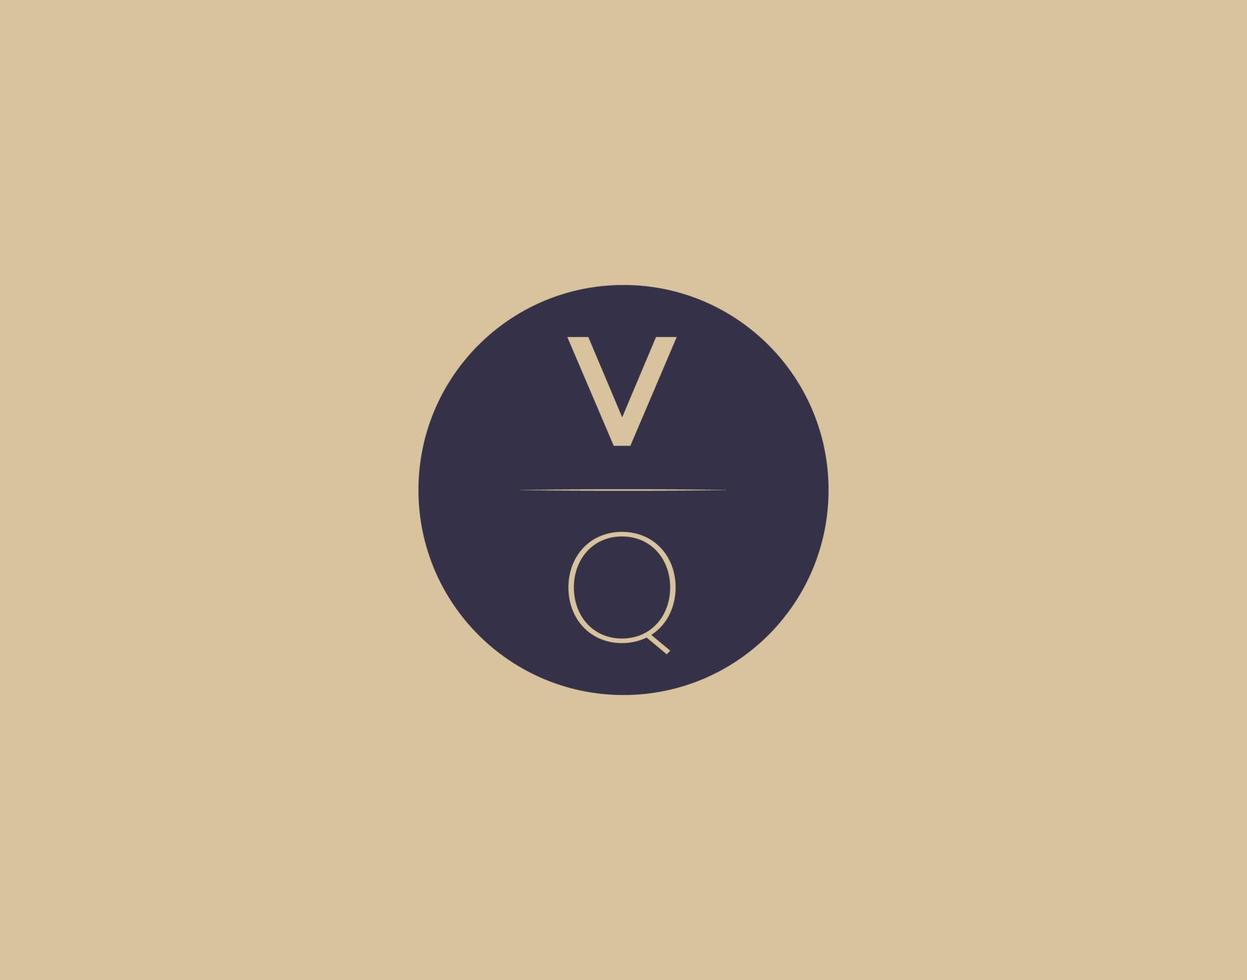 Imágenes de vector de diseño de logotipo elegante moderno de letra vq